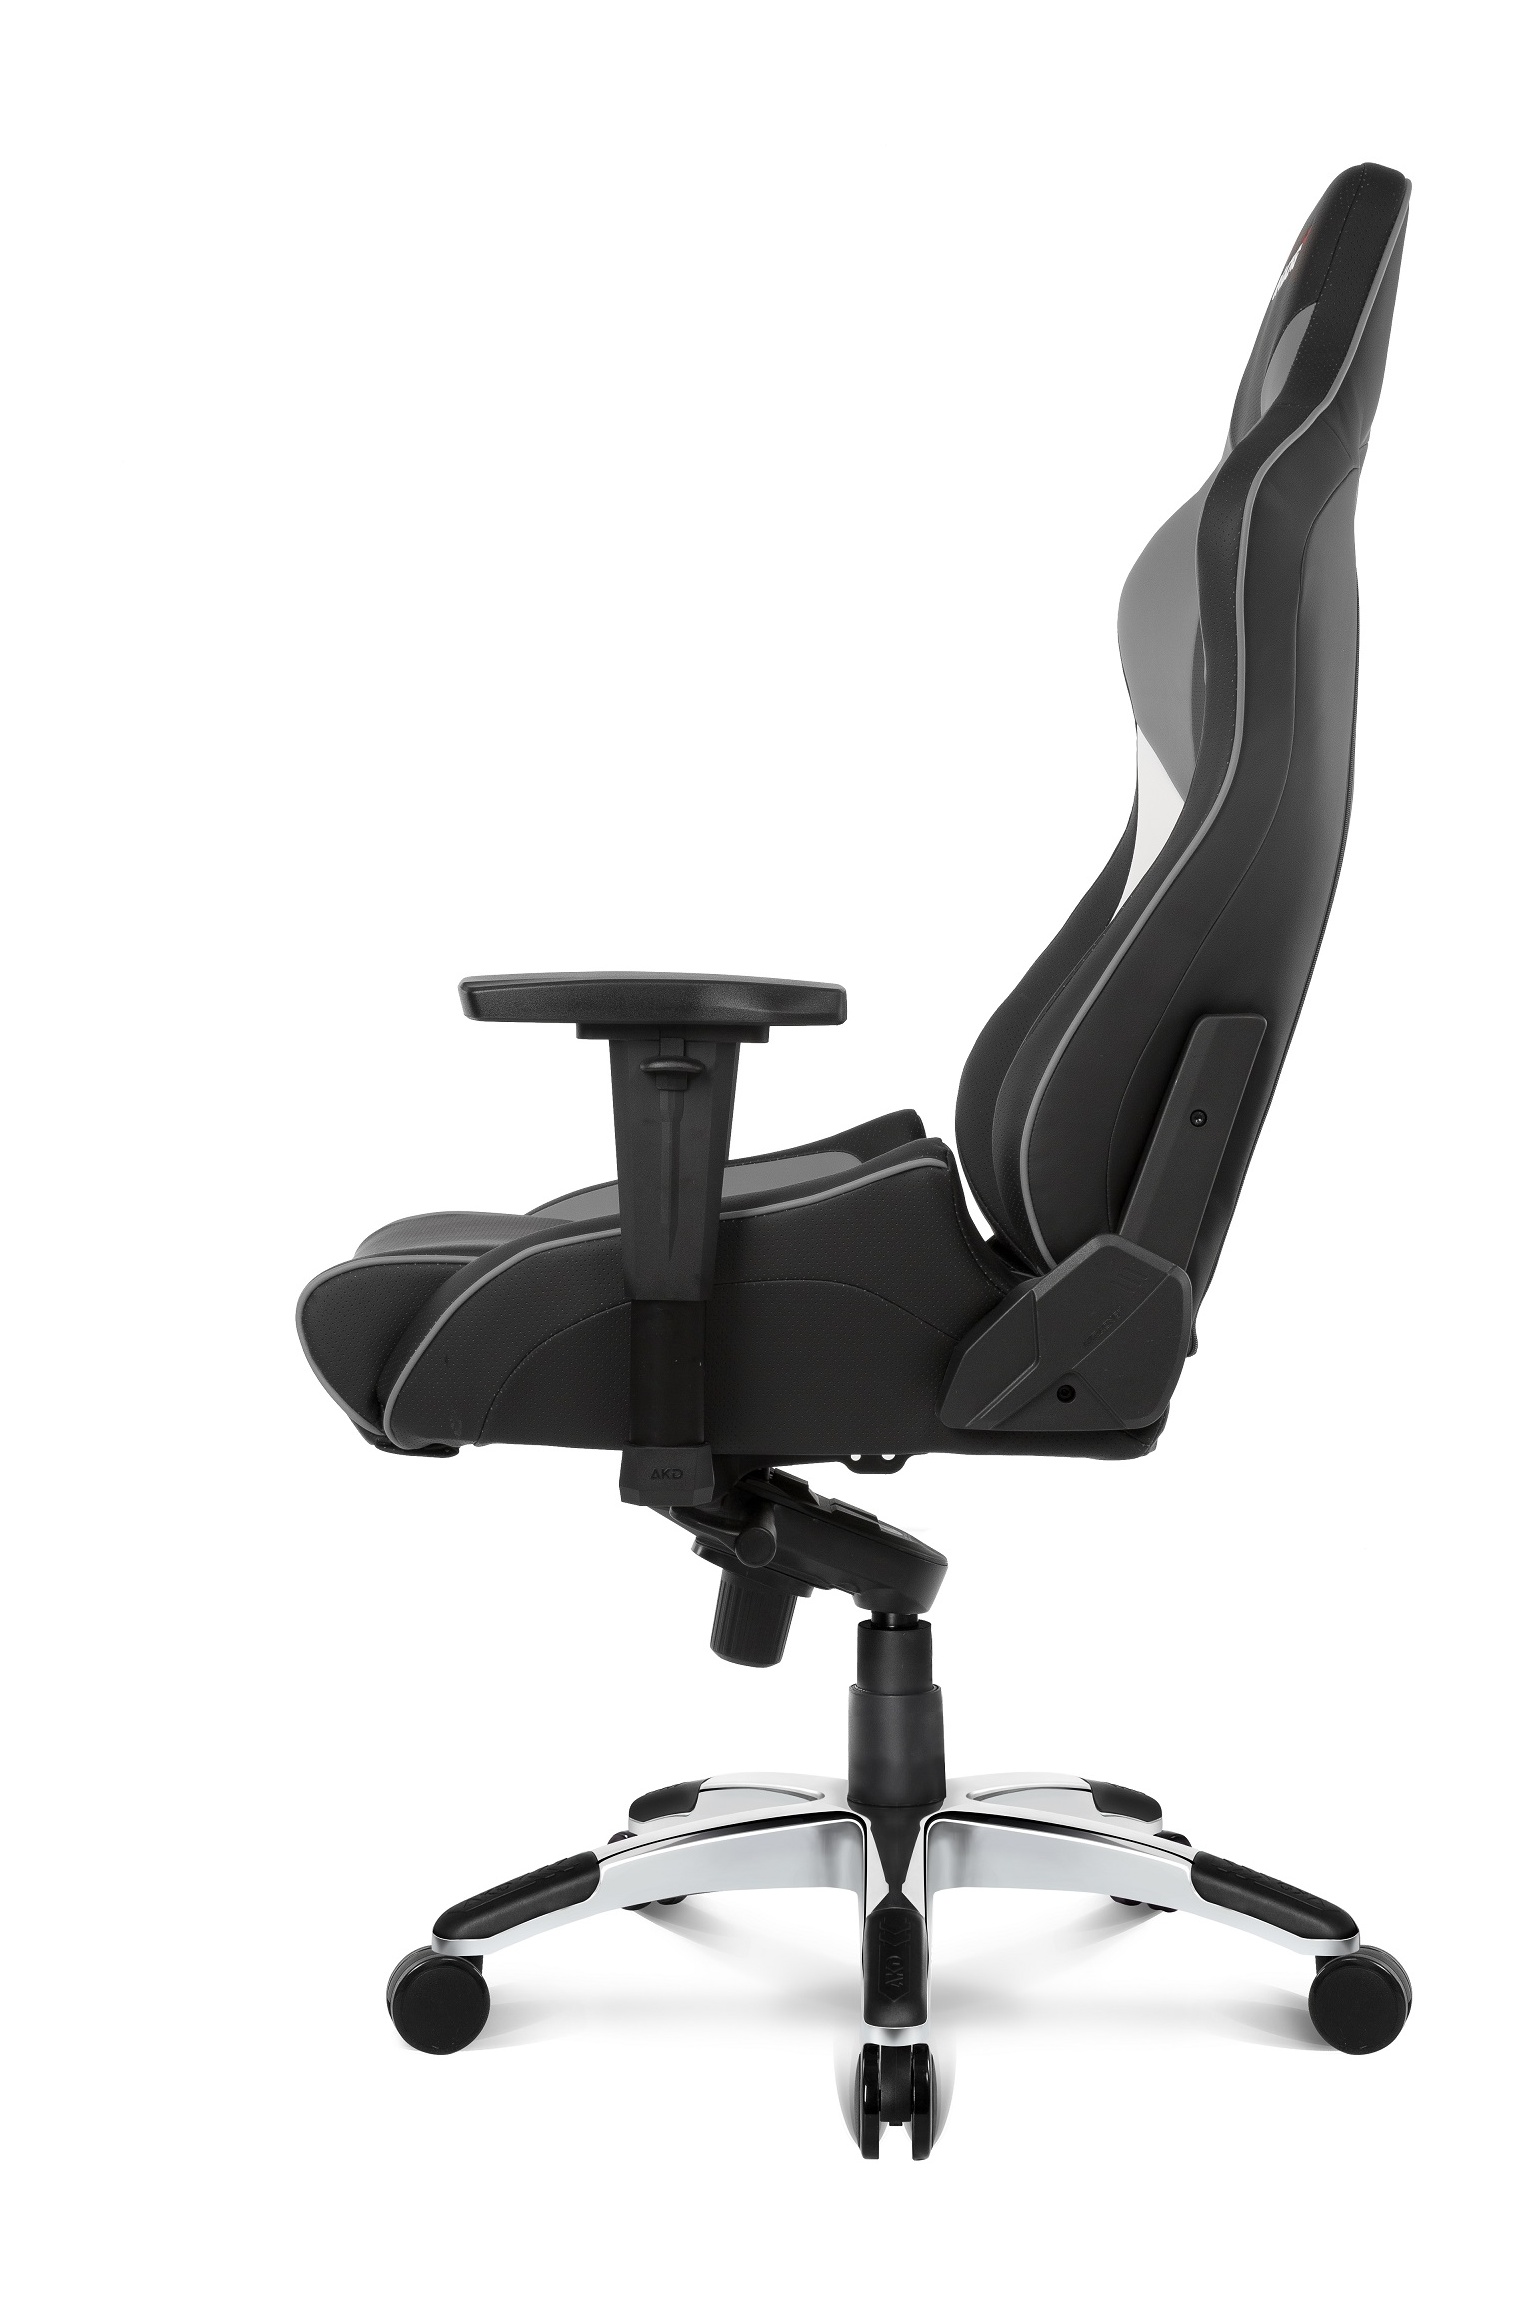 Bild von Master Pro Gaming Chair grau / schwarz